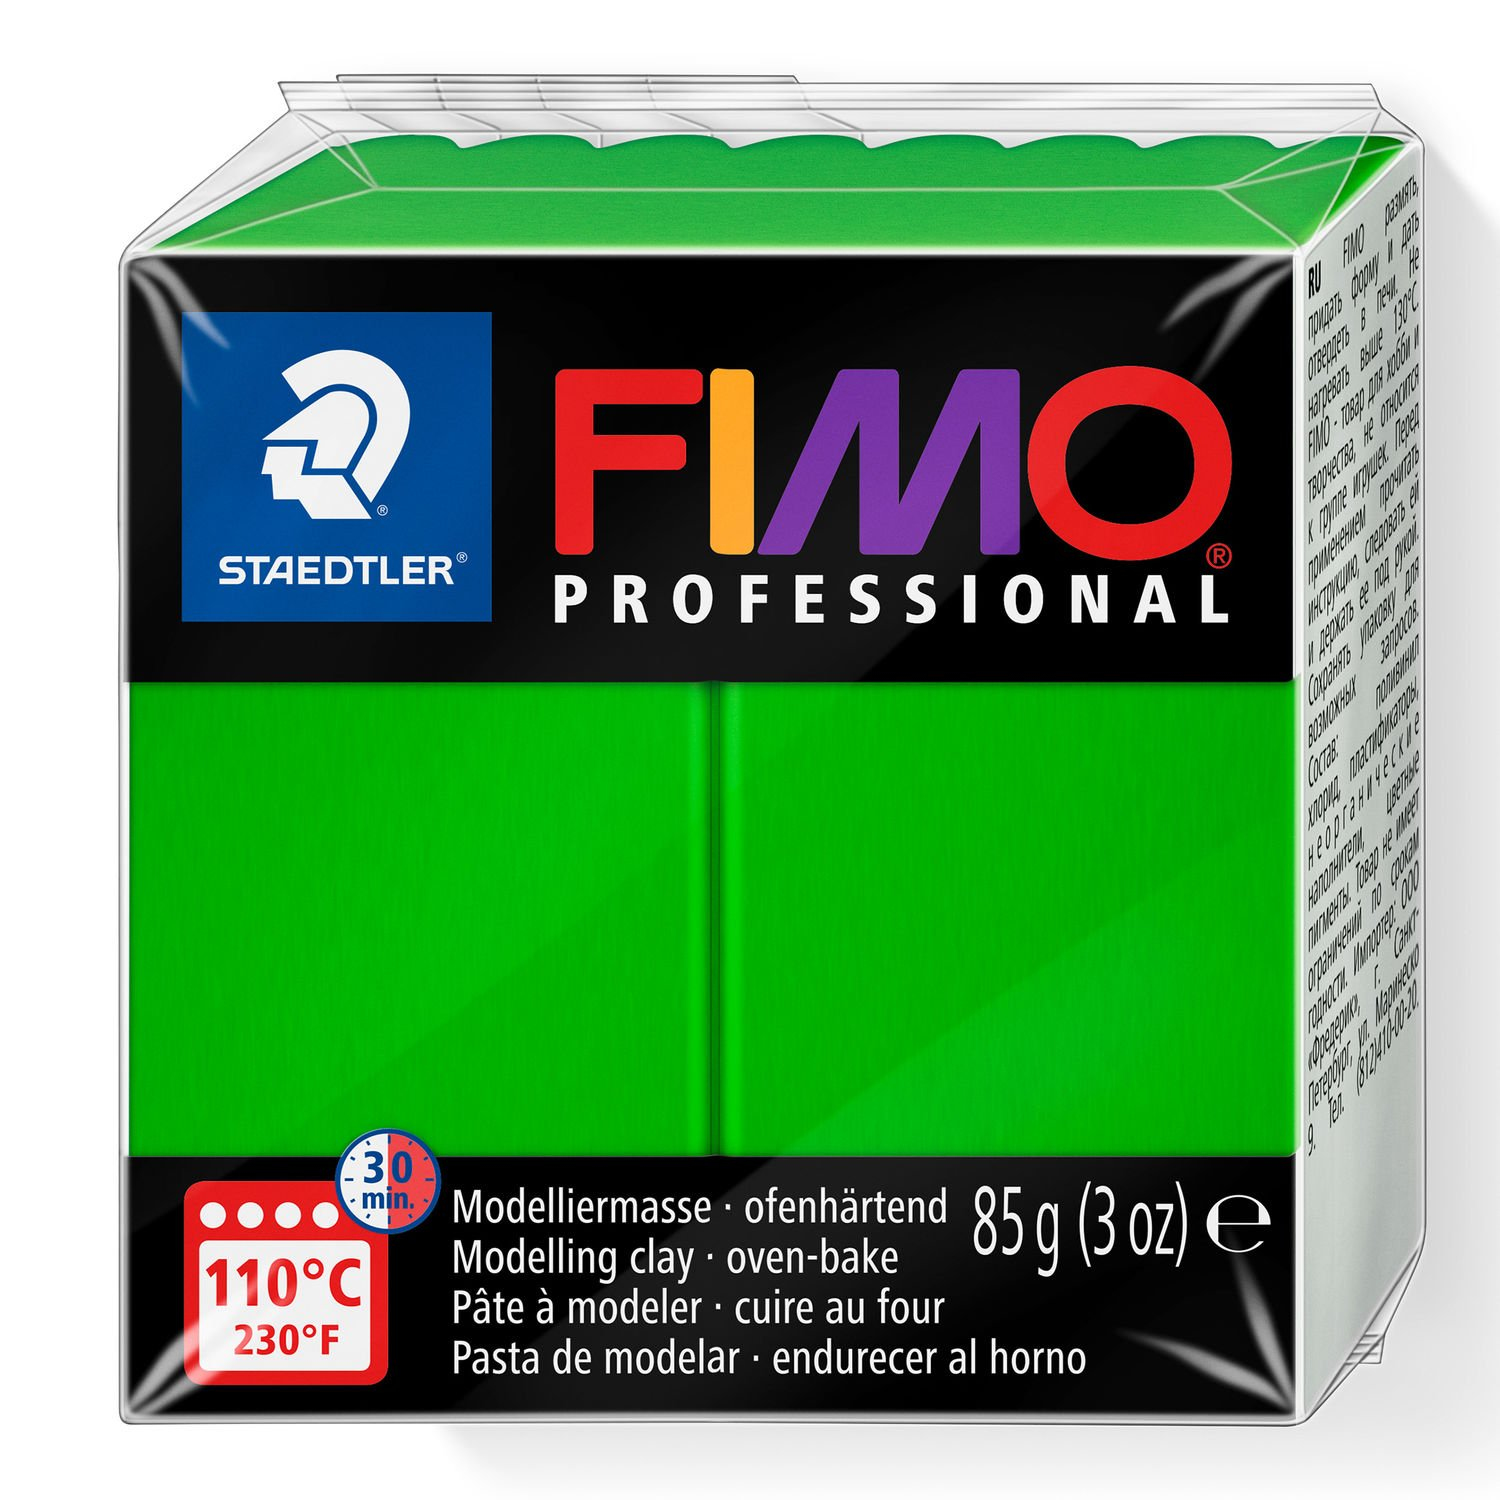 STAEDTLER FIMO 8004-005 - Knetmasse - Grün - 1 Stück(e) - 1 Farben - 110 °C - 30 min